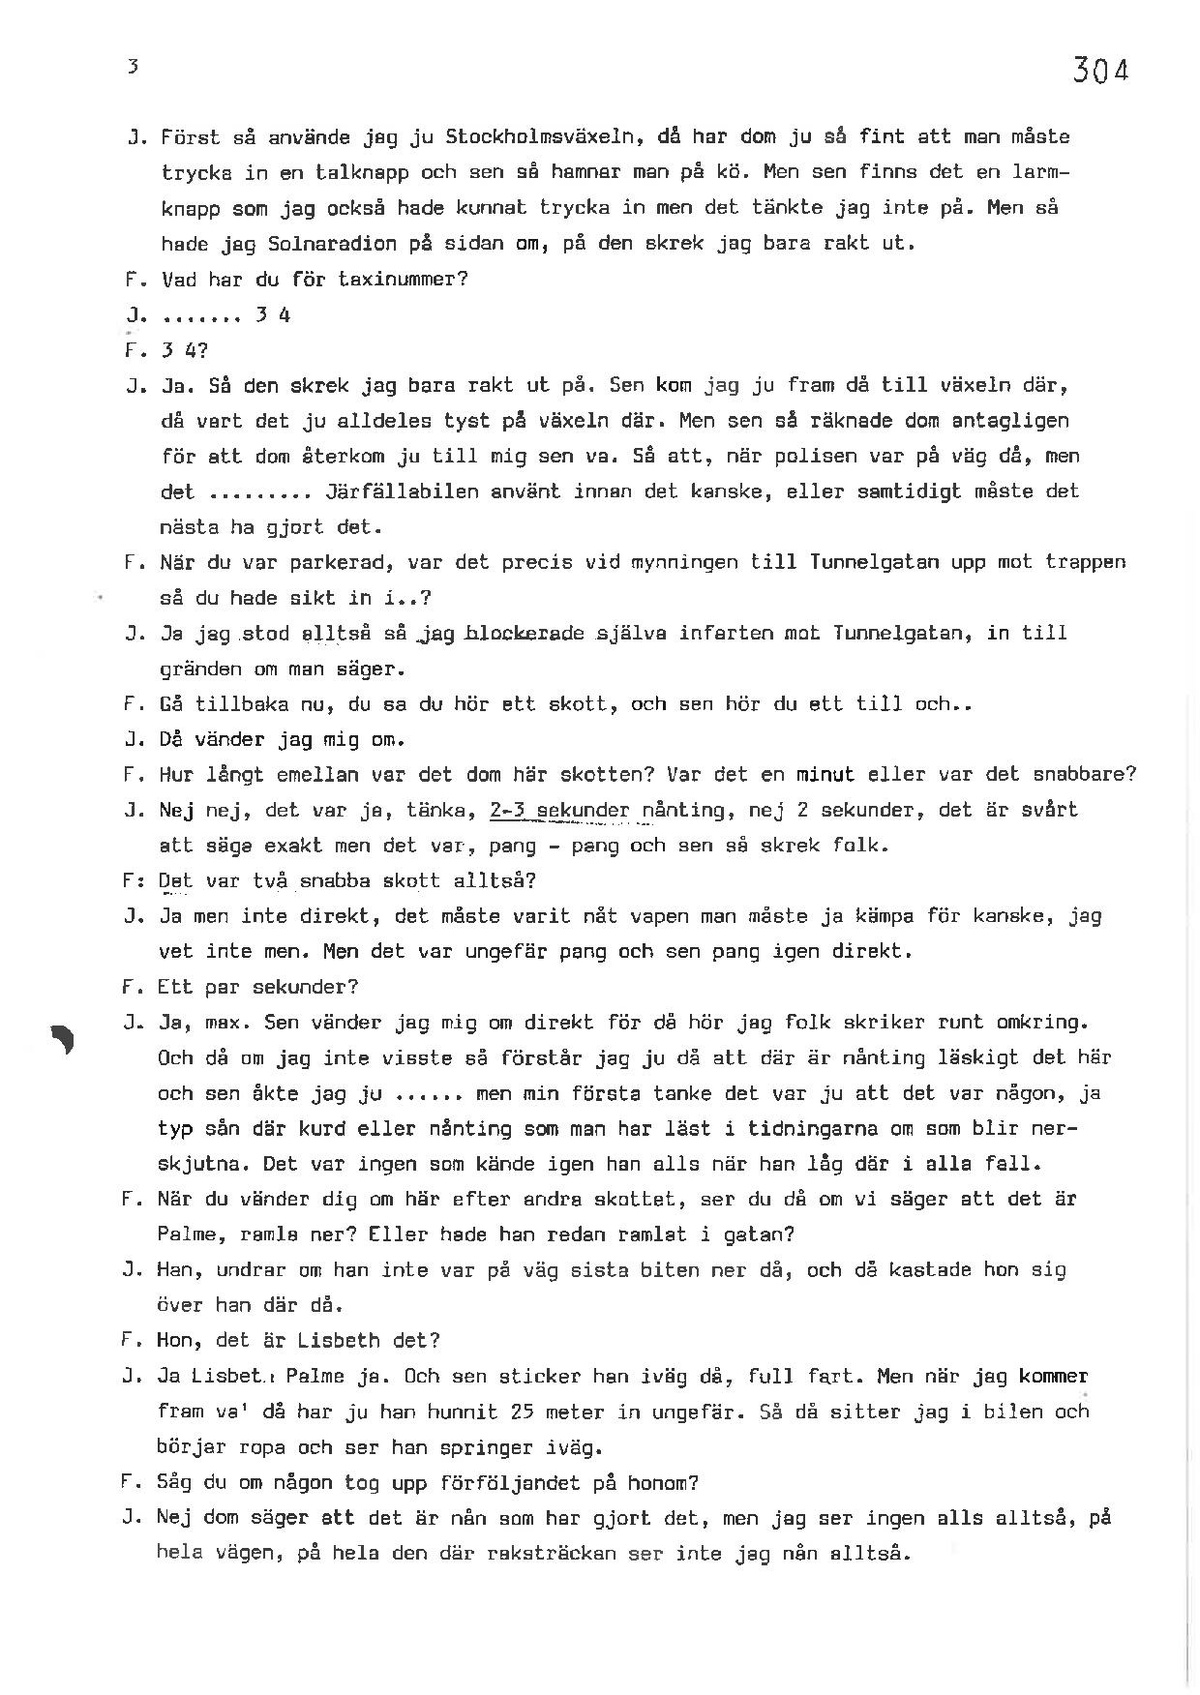 Pol-1986-03-14 EE1971-00-B VITTNESFÖRHÖR-Hans-Johansson.pdf